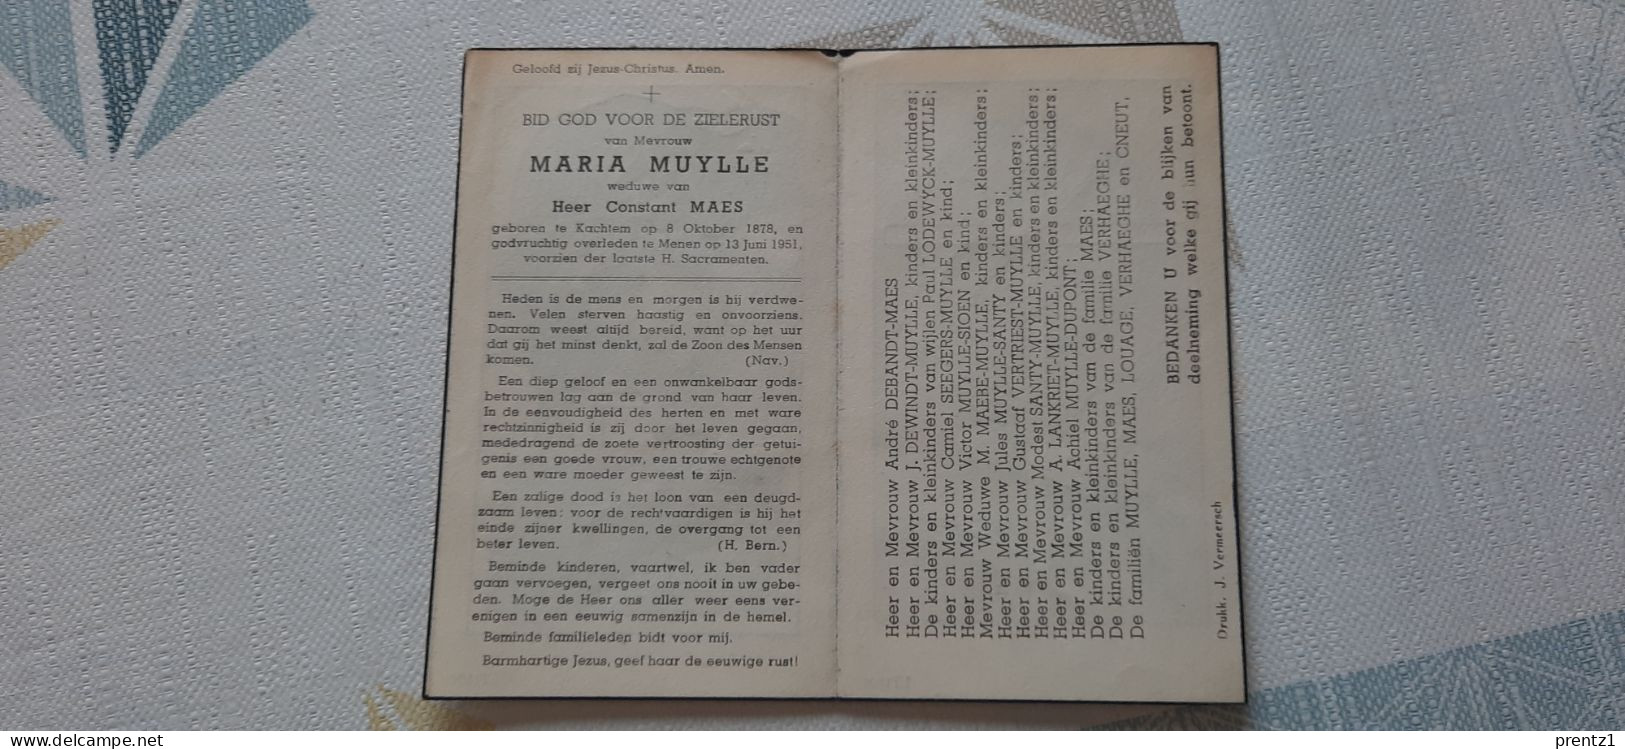 Marie Muylle Geb. Kachtem 8/10/1878- Getr. C. Maes - Gest. Menen 13/06/1951 - Devotion Images